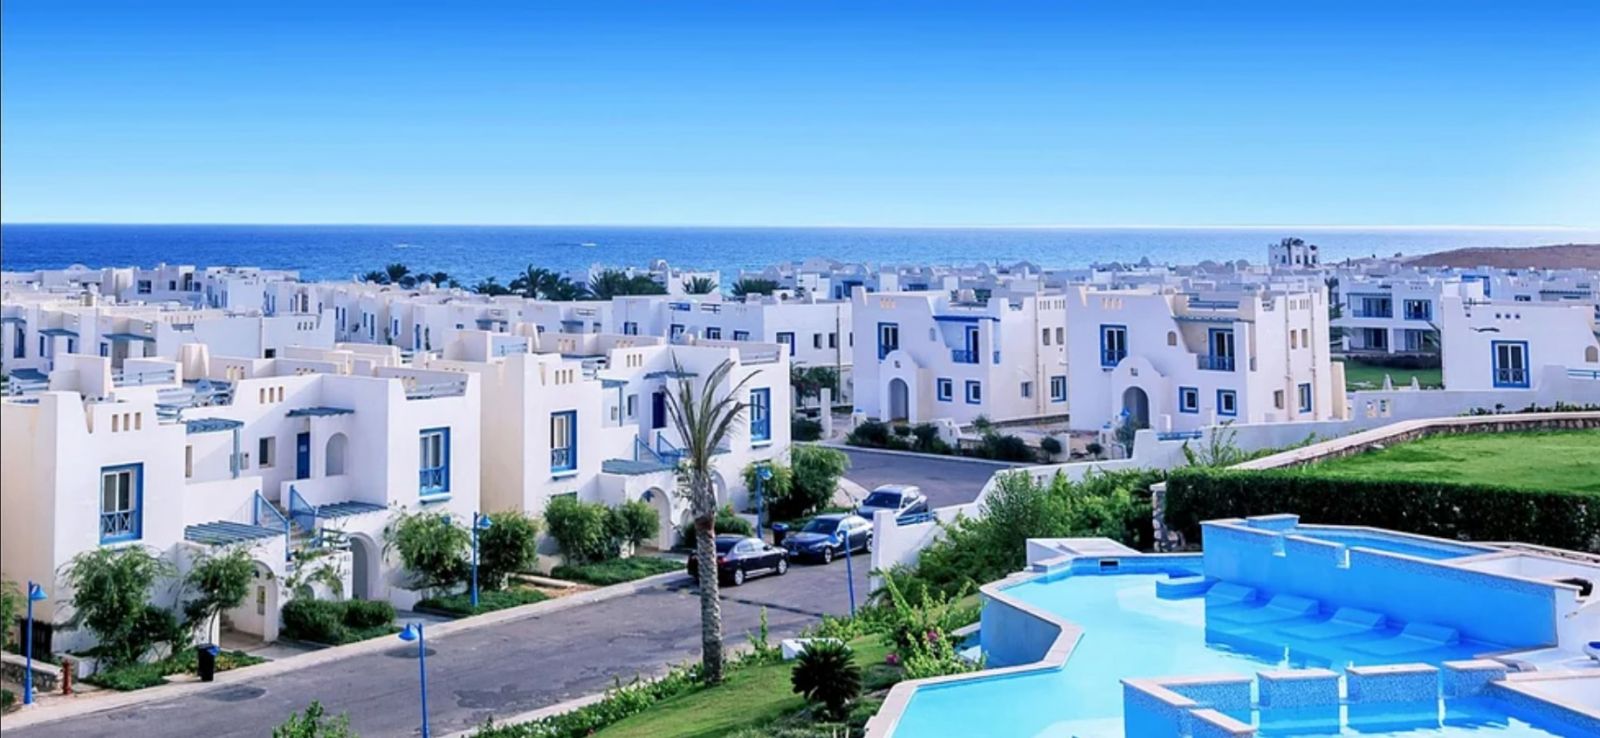 منتجع رودس ايلاند الساحل الشمالي - Rhodes Island Resort — 20 عقار للبيع |  موقع عقارات مصر